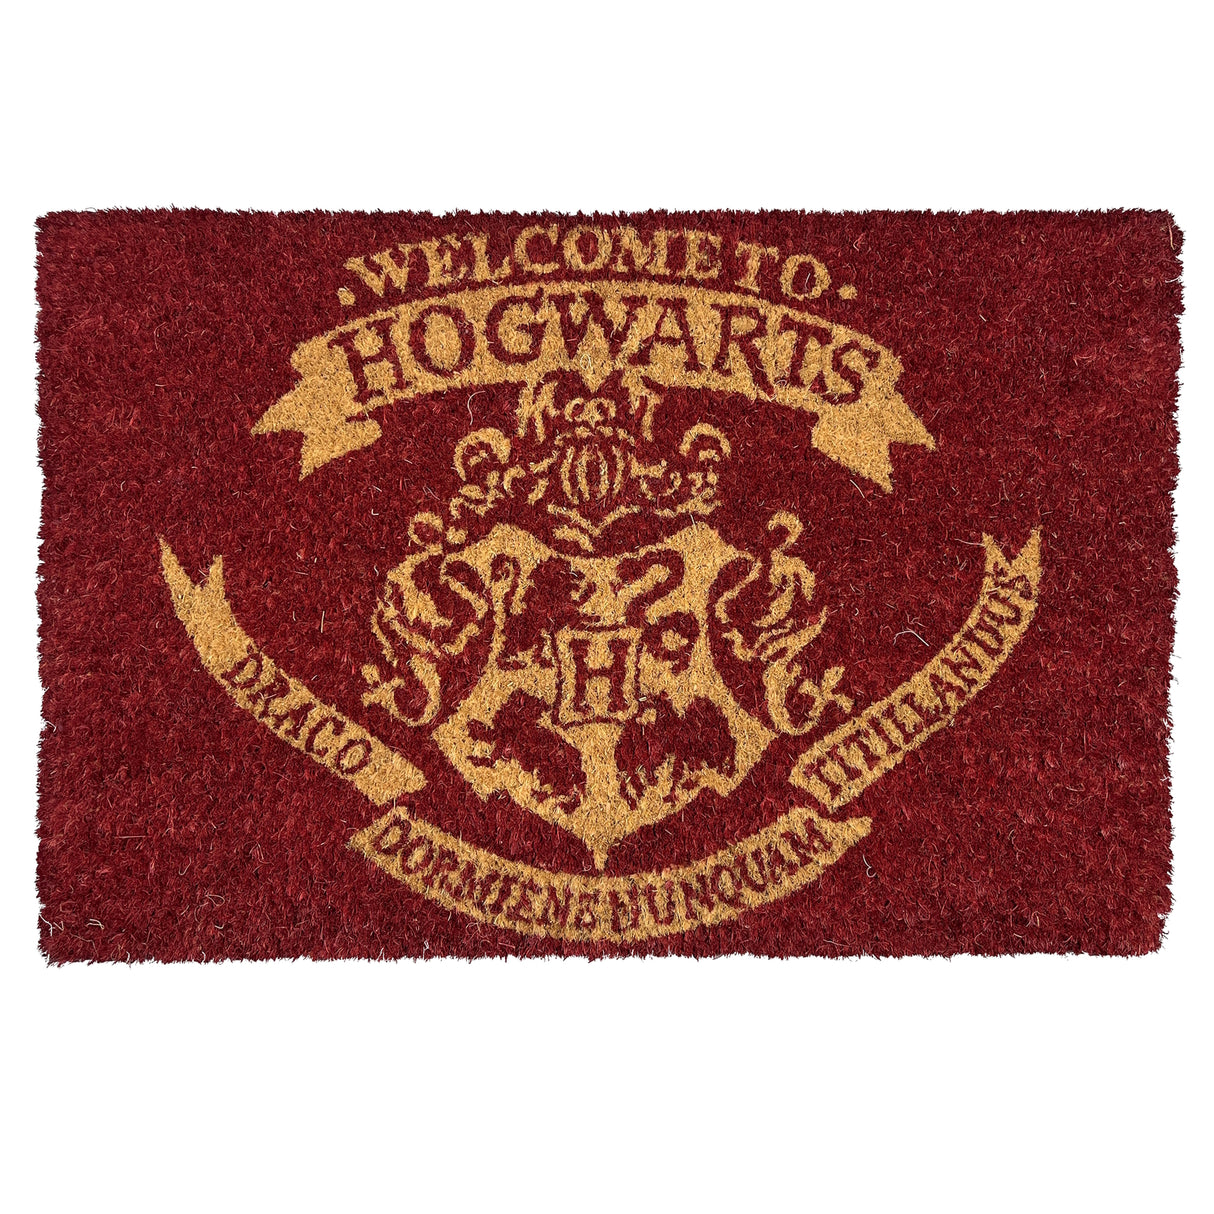 Harry Potter Welcome to Hogwarts Logo Fußmatte